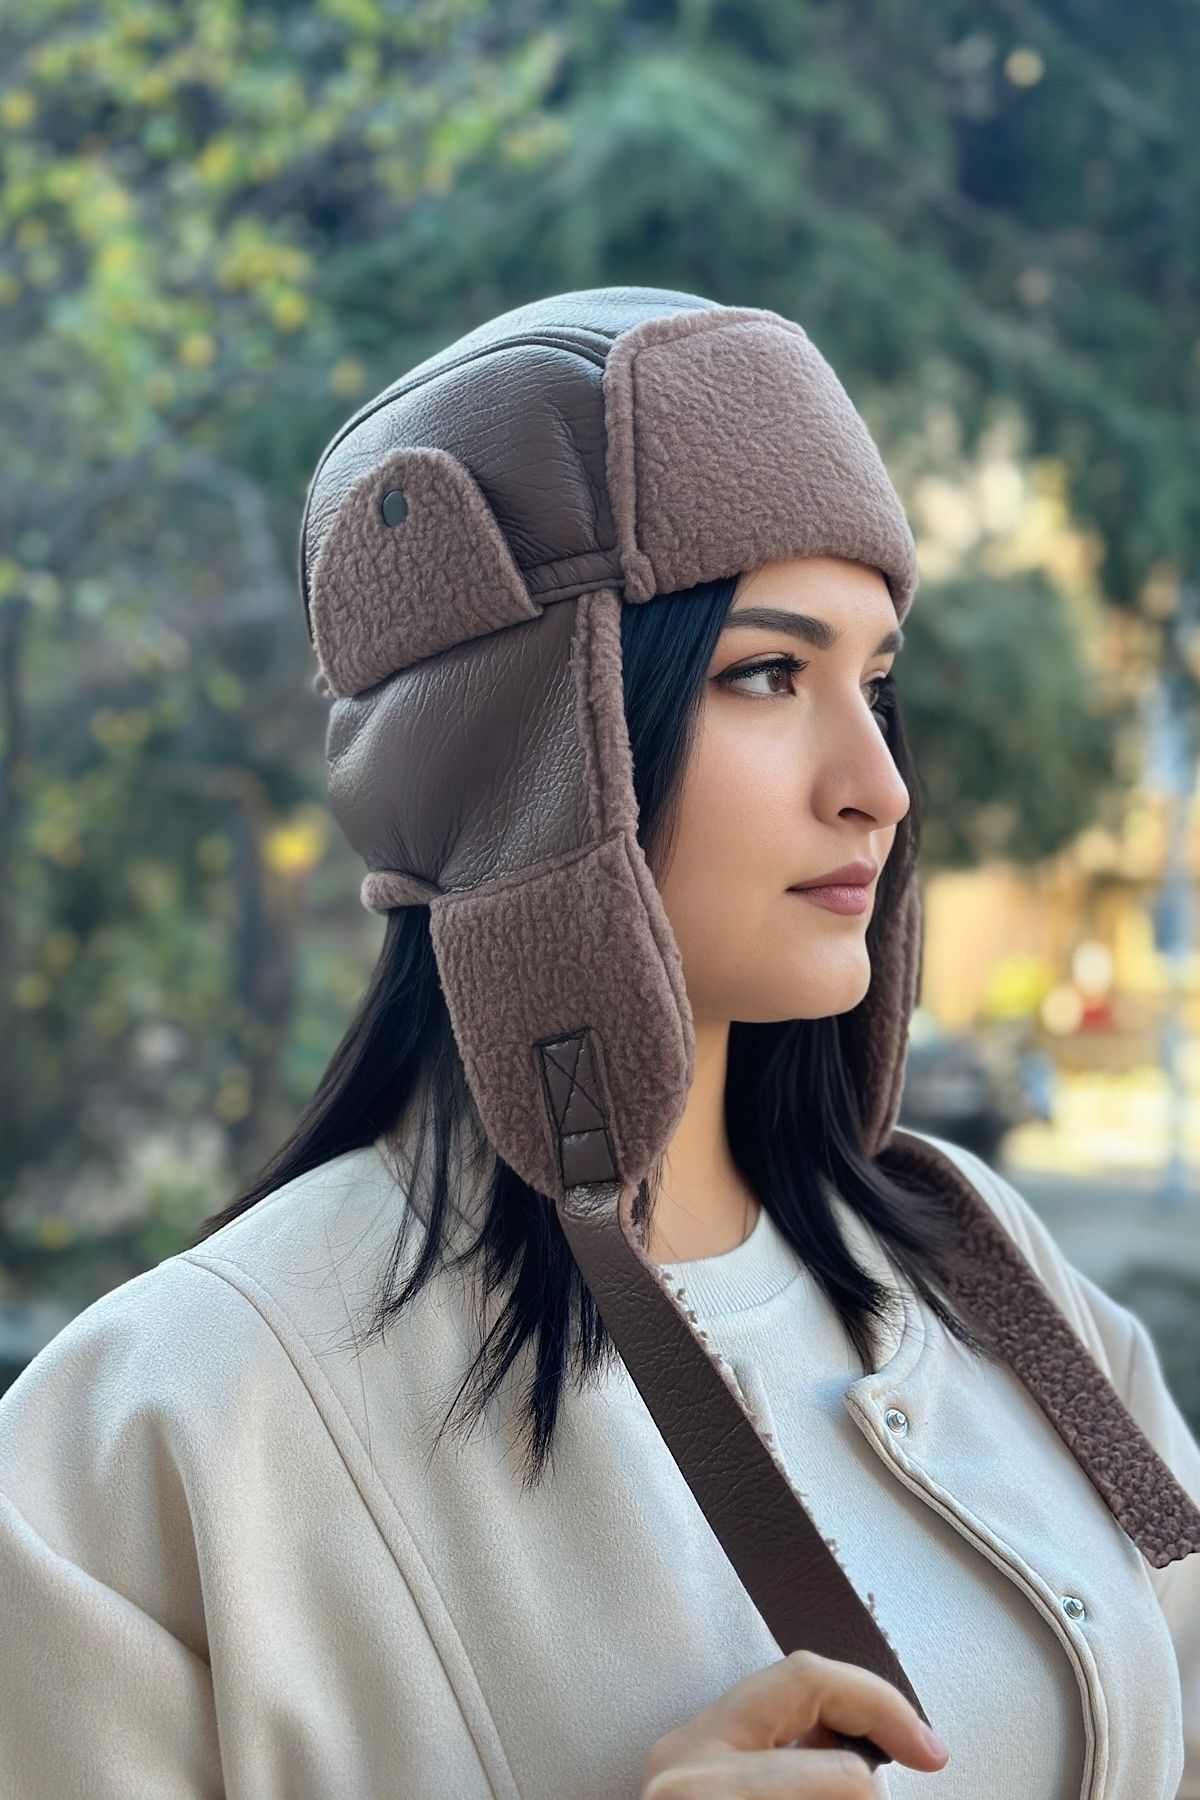 novon Tasarım Suni Deri İçi Kürk Kulak Kapamalı Kadın Pilot Şapka